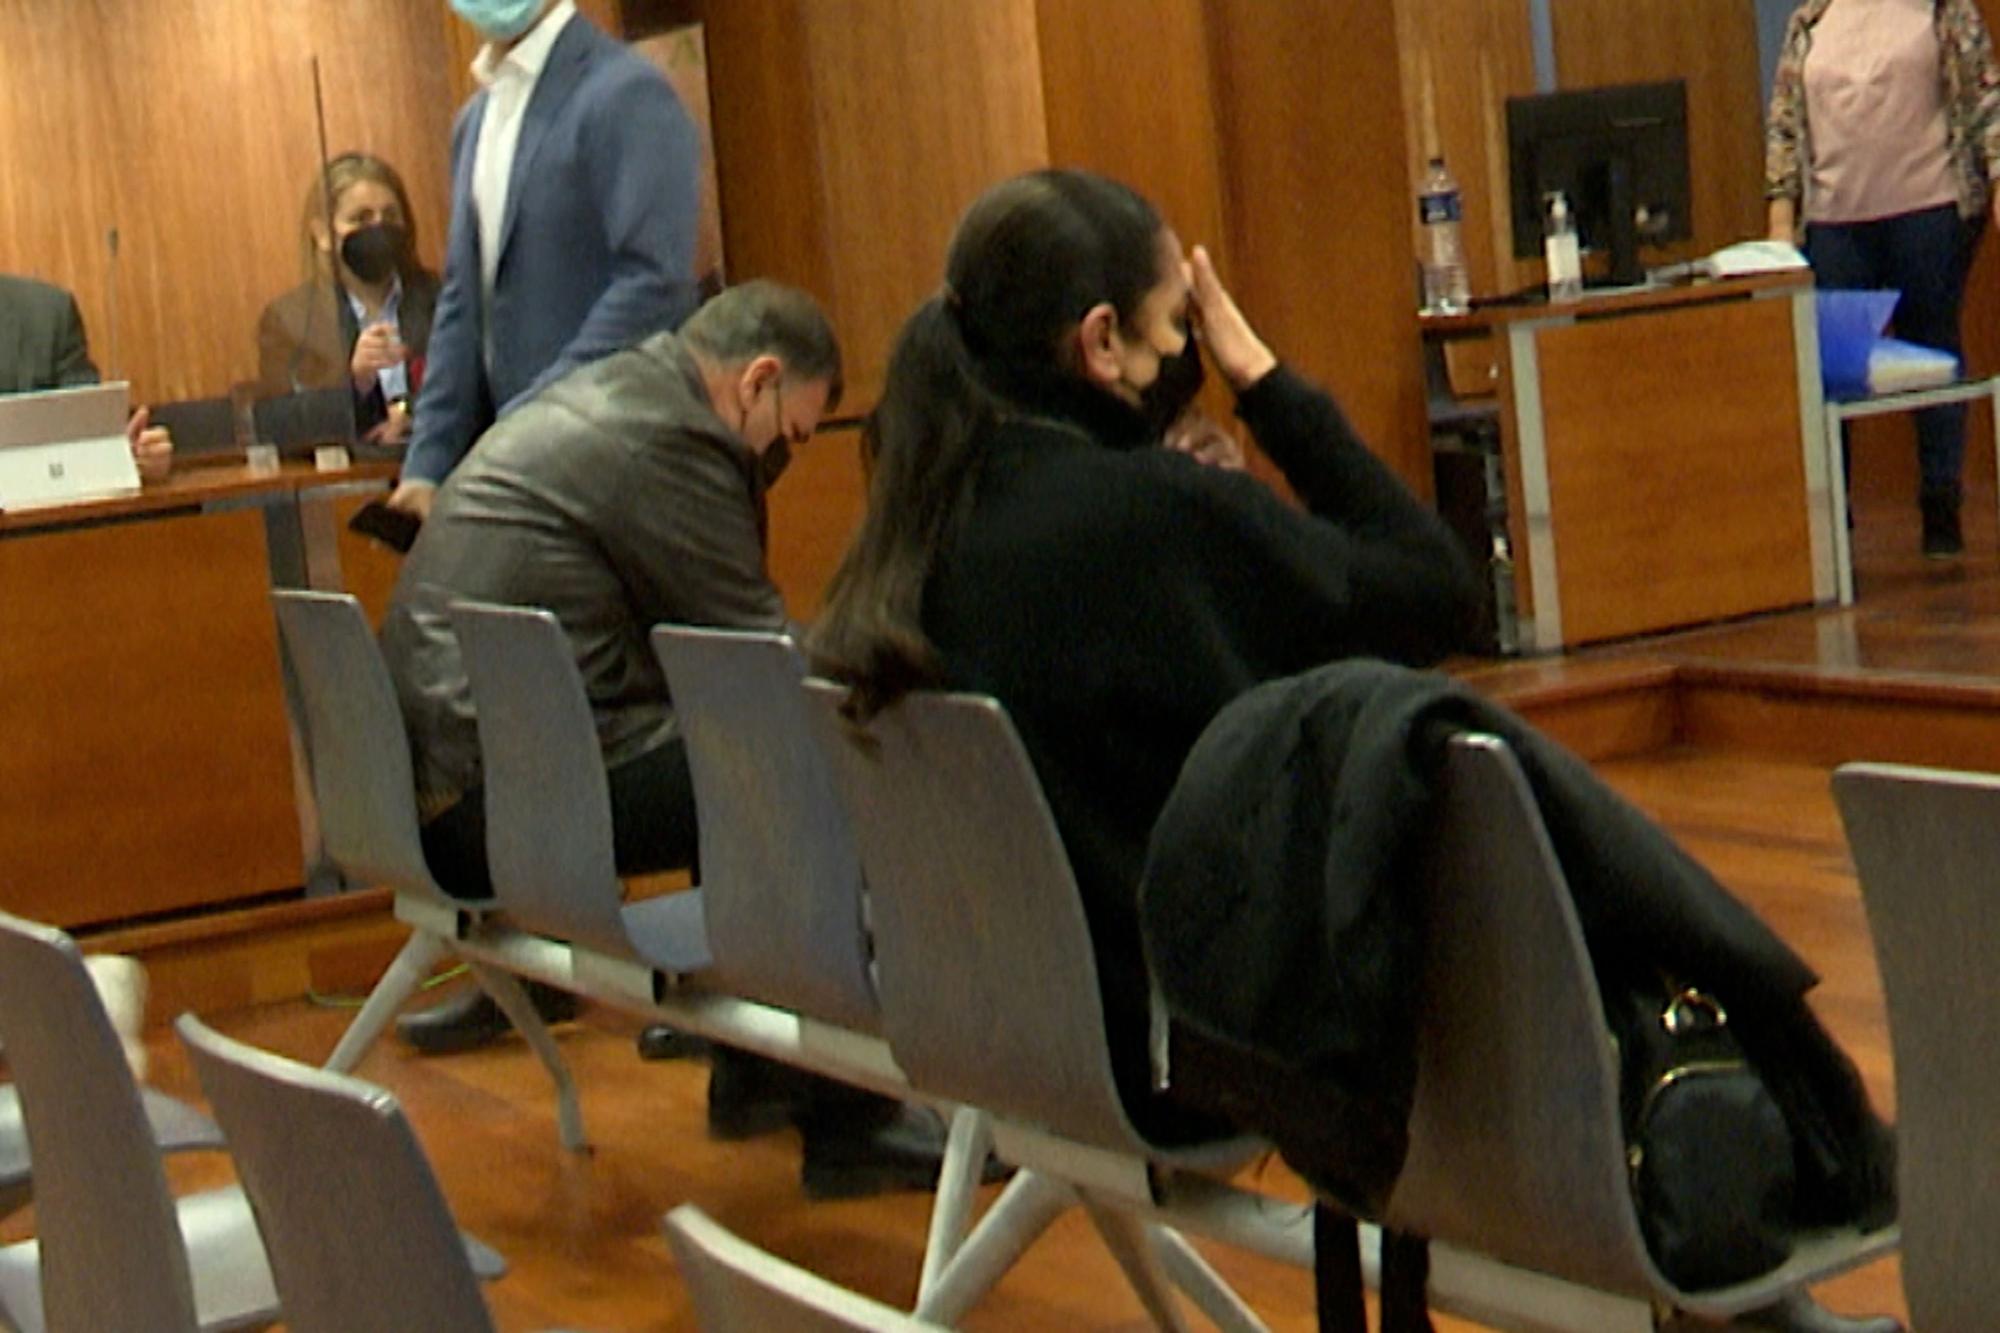 Las sobrecogedoras imágenes de Isabel Pantoja derrumbándose ante el juez